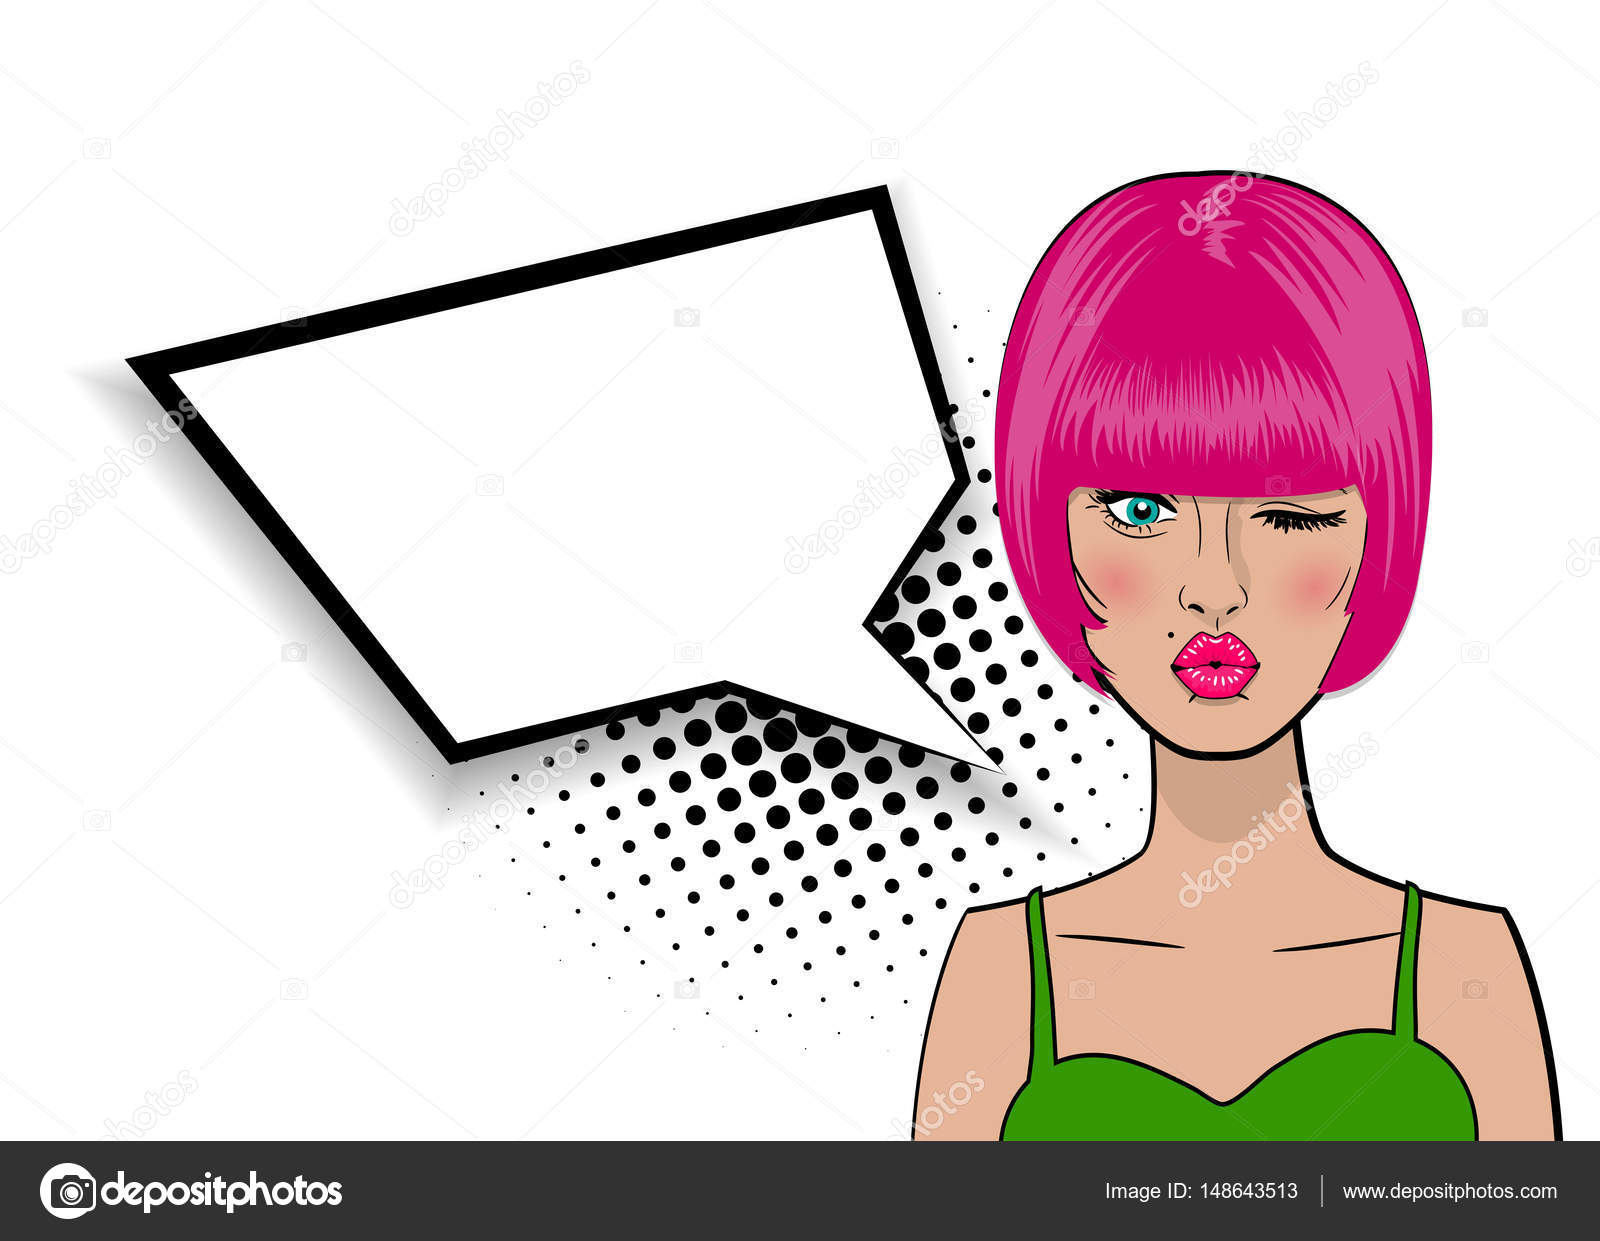 Desenho de cabelo curto feminino fofo ilustração de arte em estilo